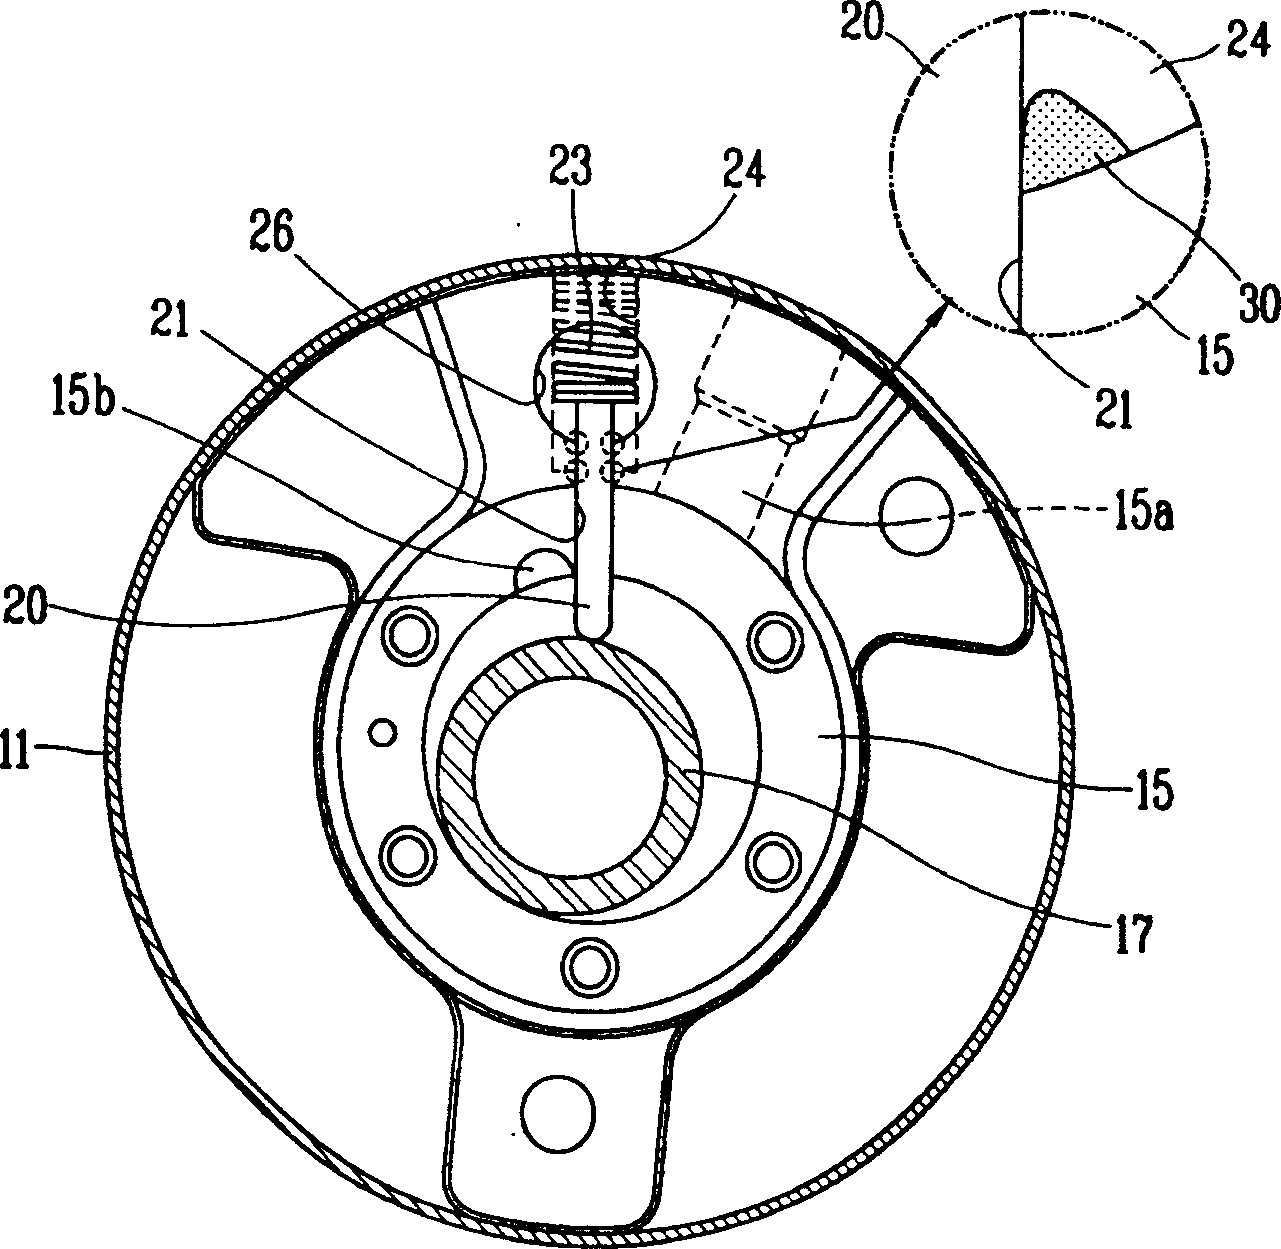 Blade spring arrangement of rotary compressor